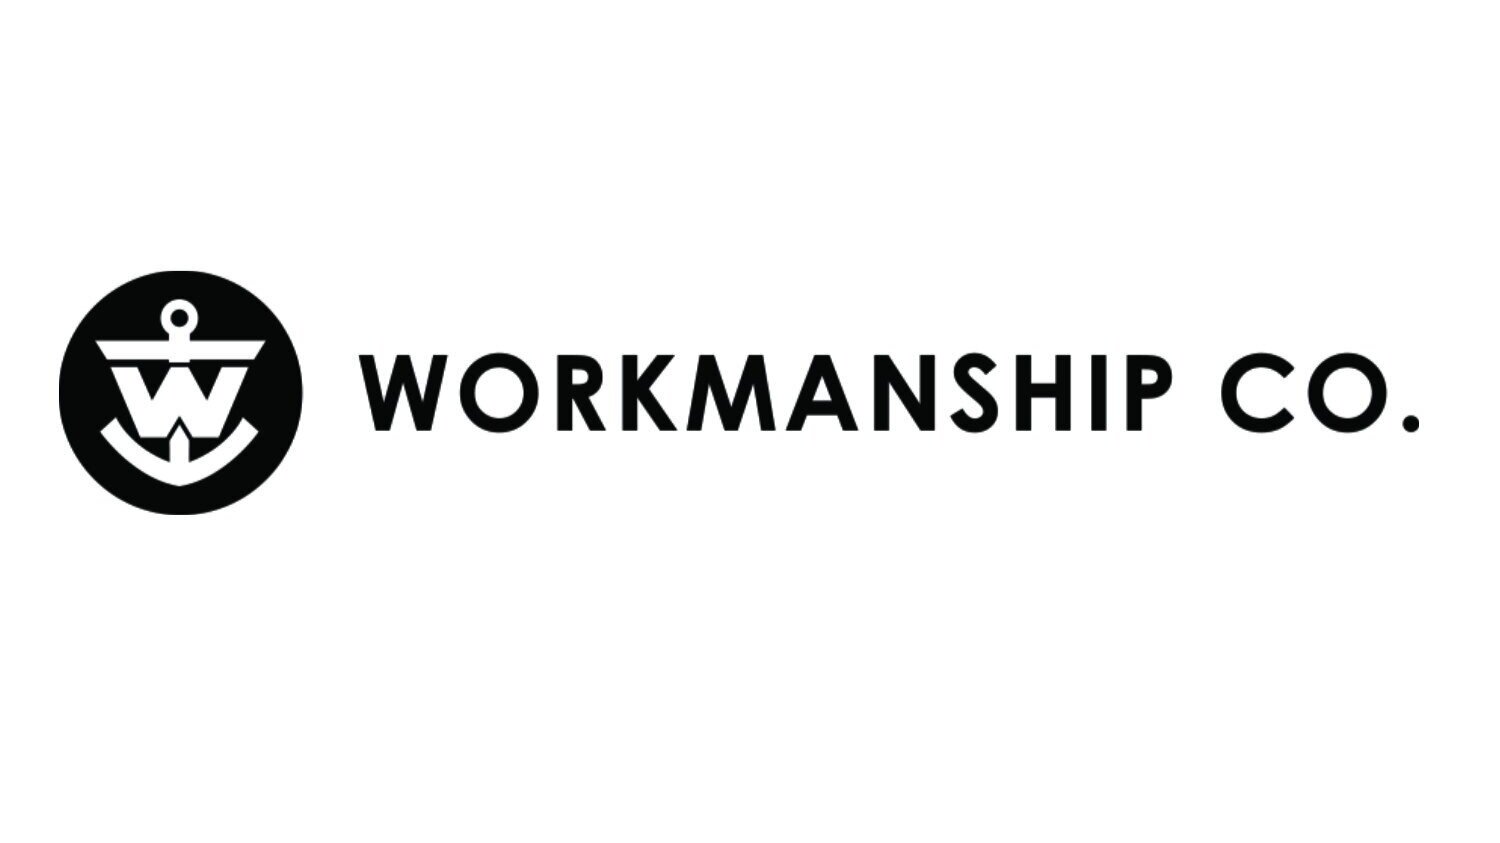 WORKMANSHIP CO.